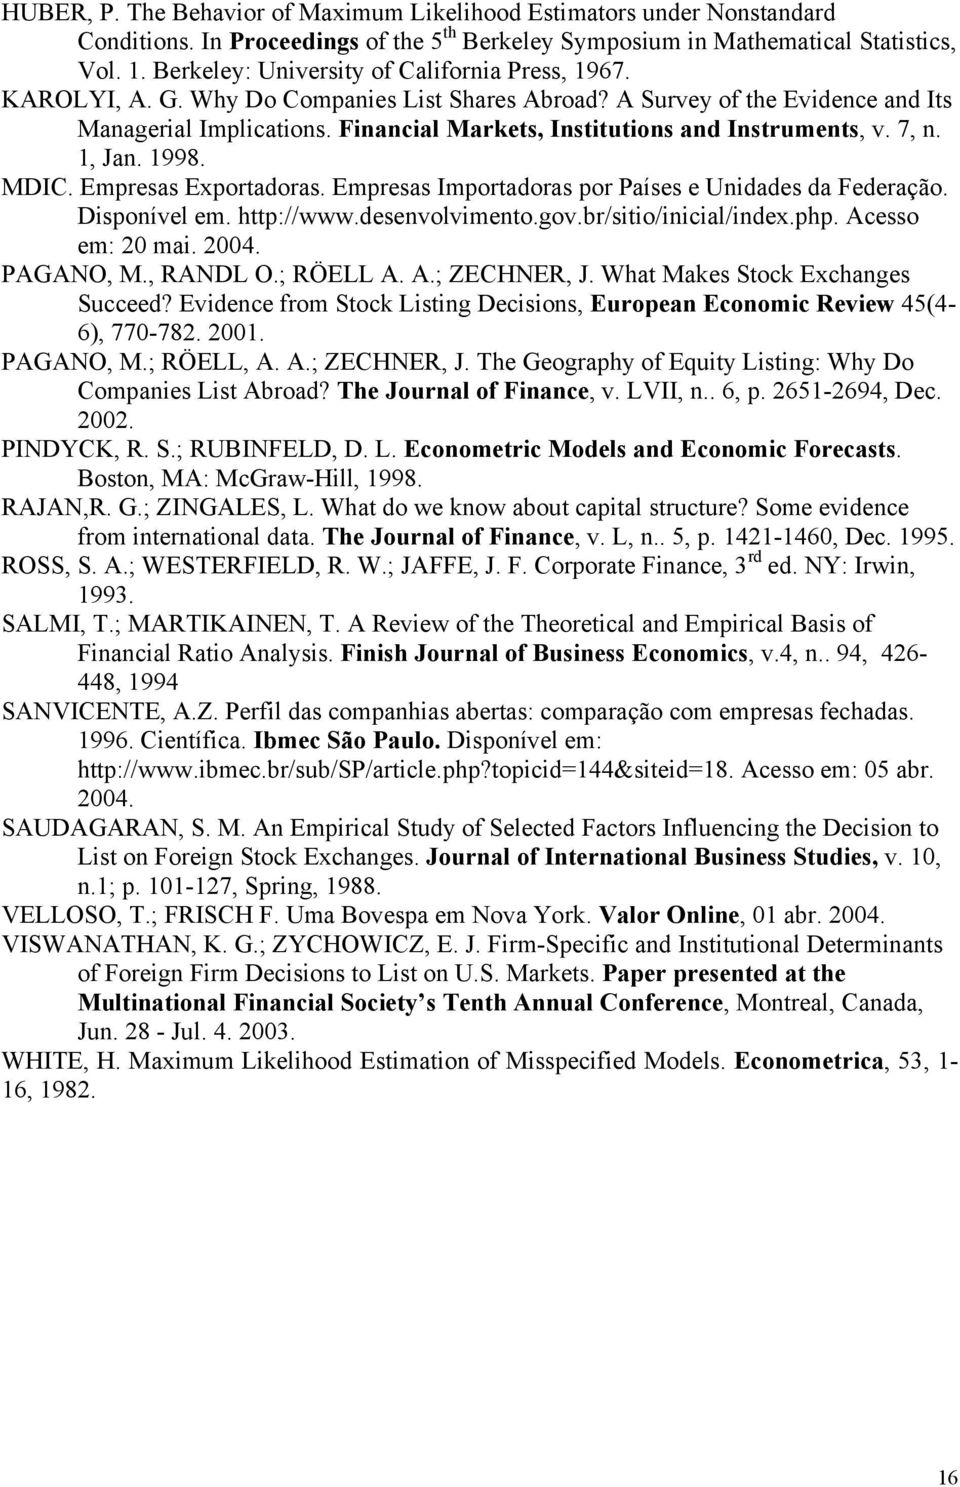 Financial Markets, Institutions and Instruments, v. 7, n. 1, Jan. 1998. MDIC. Empresas Exportadoras. Empresas Importadoras por Países e Unidades da Federação. Disponível em. http://www.